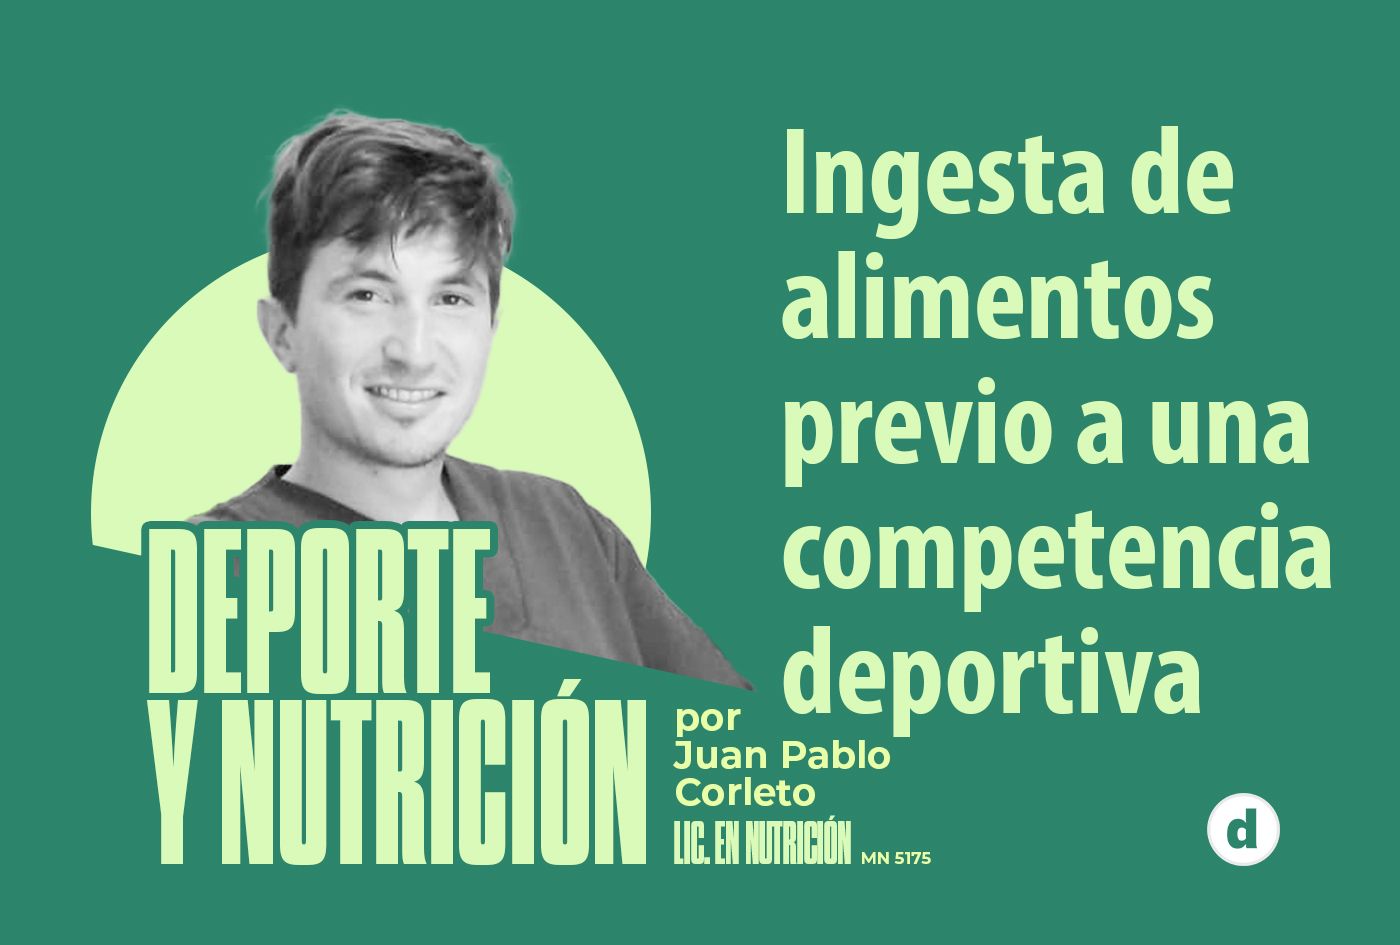 La columna del nutricionista Juan Pablo Corleto: “Ingesta de alimentos previo a una competencia deportiva”